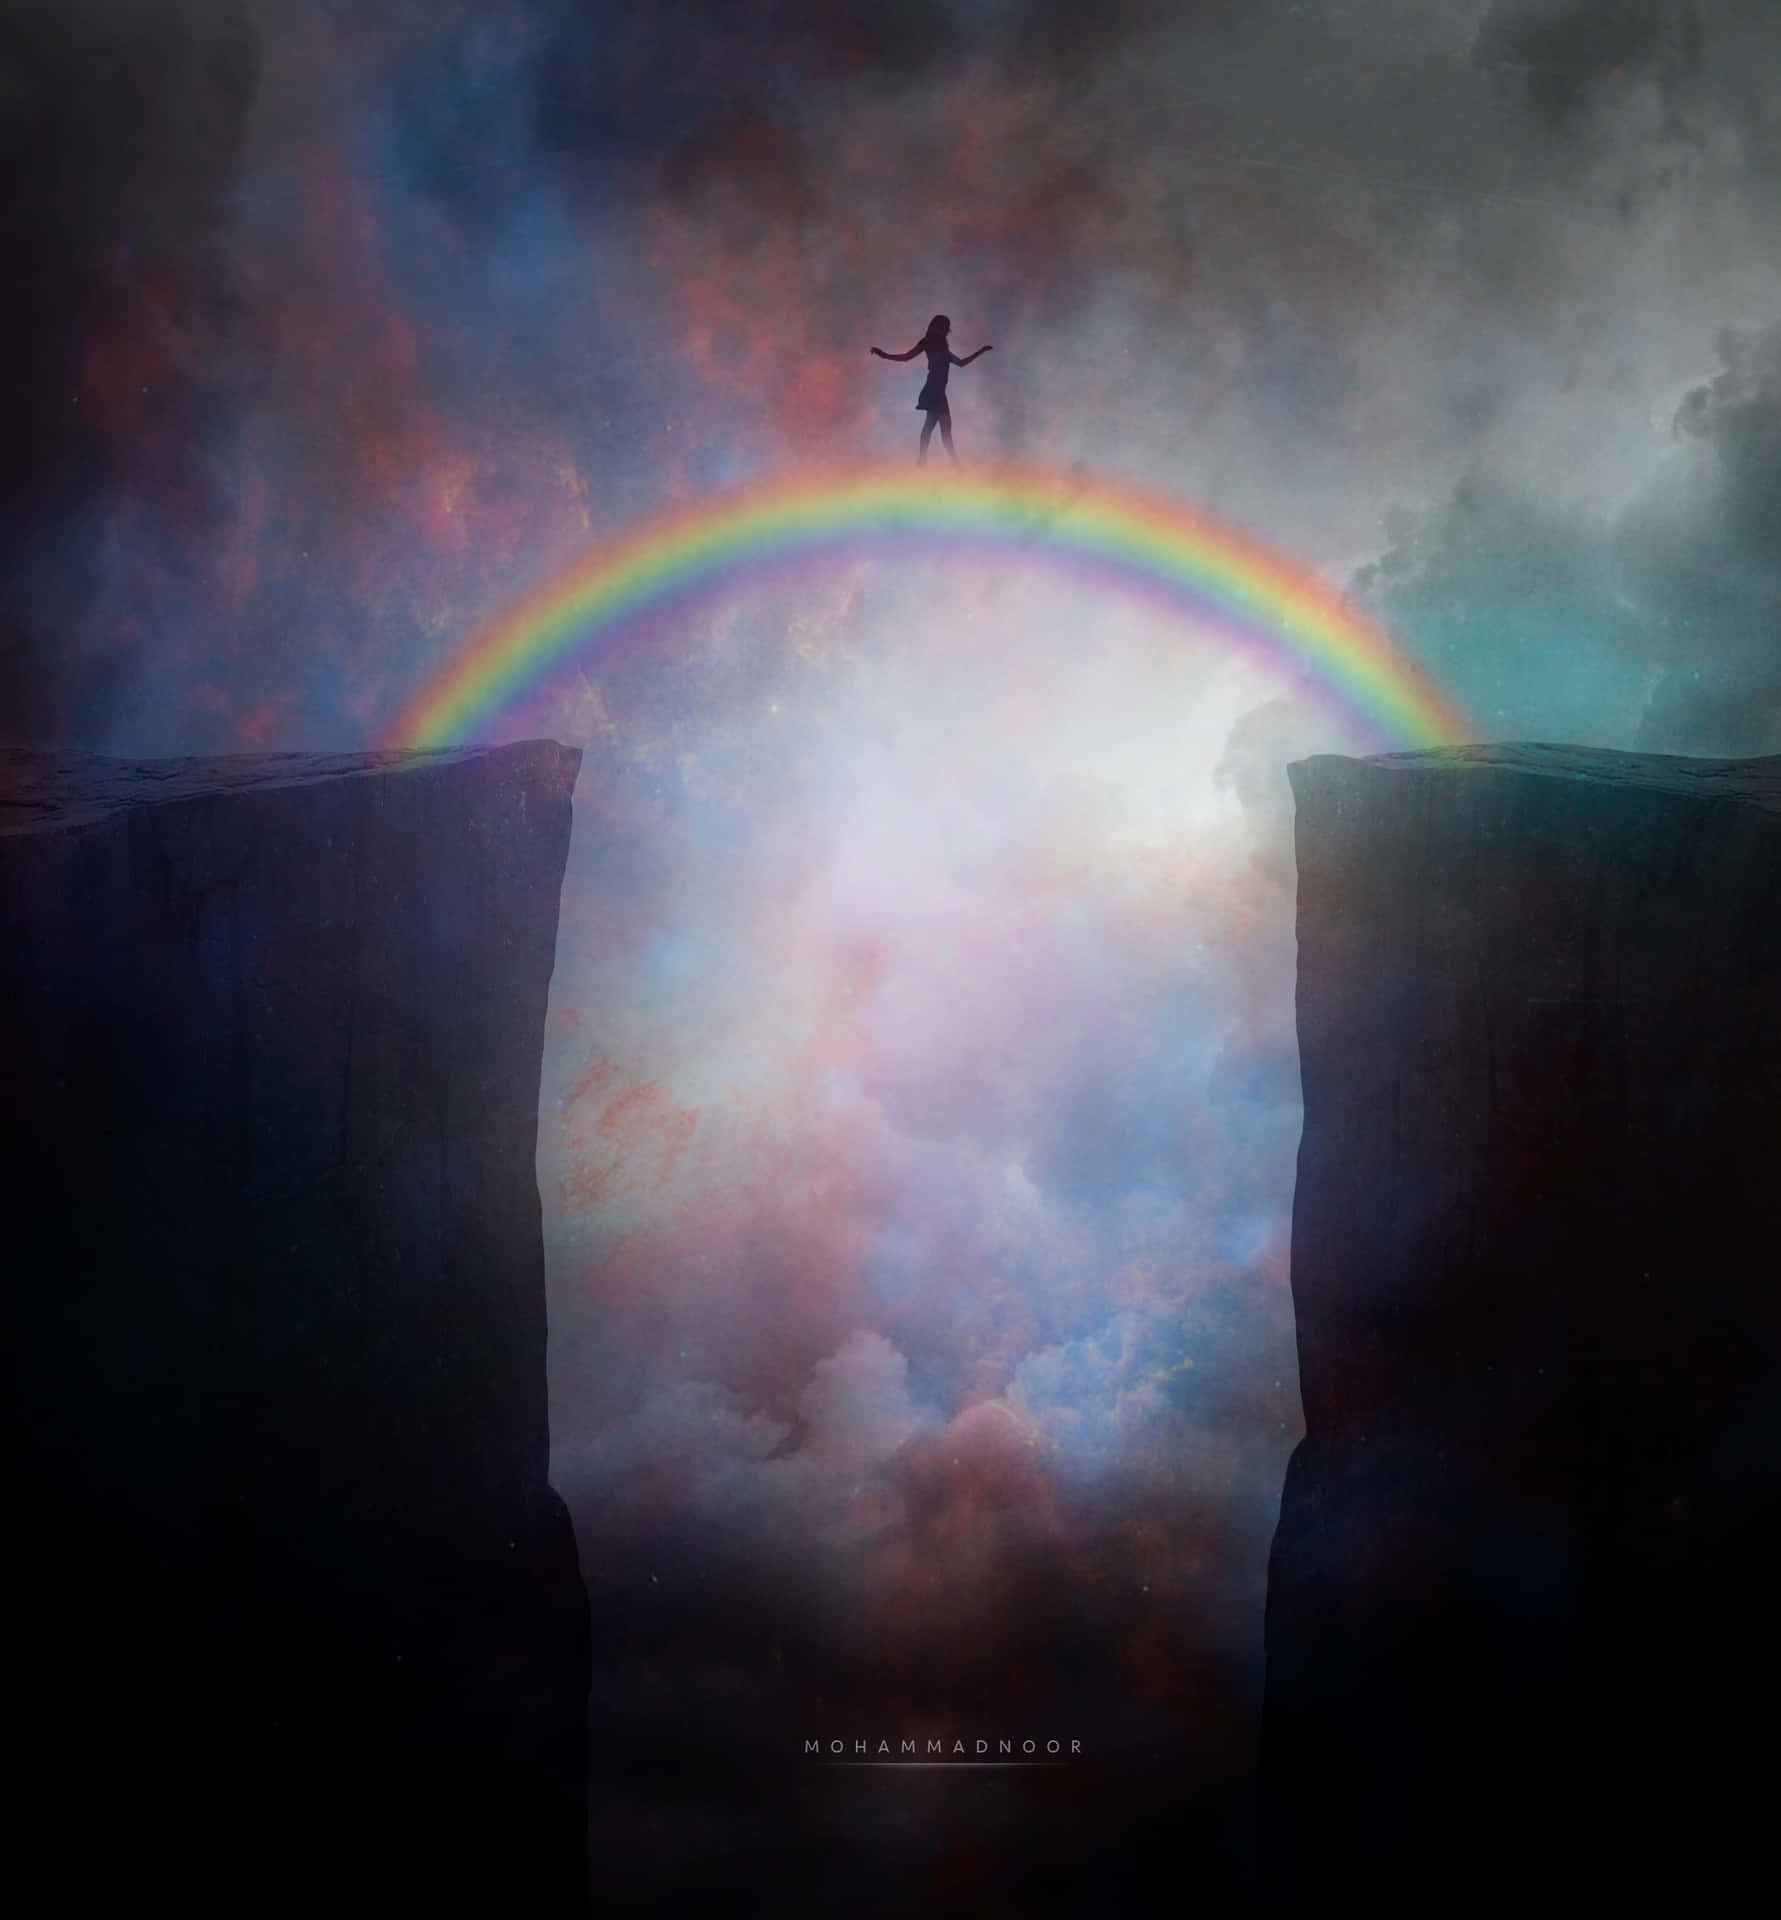 Eineperson Steht Auf Einer Klippe Mit Einem Regenbogen Am Himmel. Wallpaper